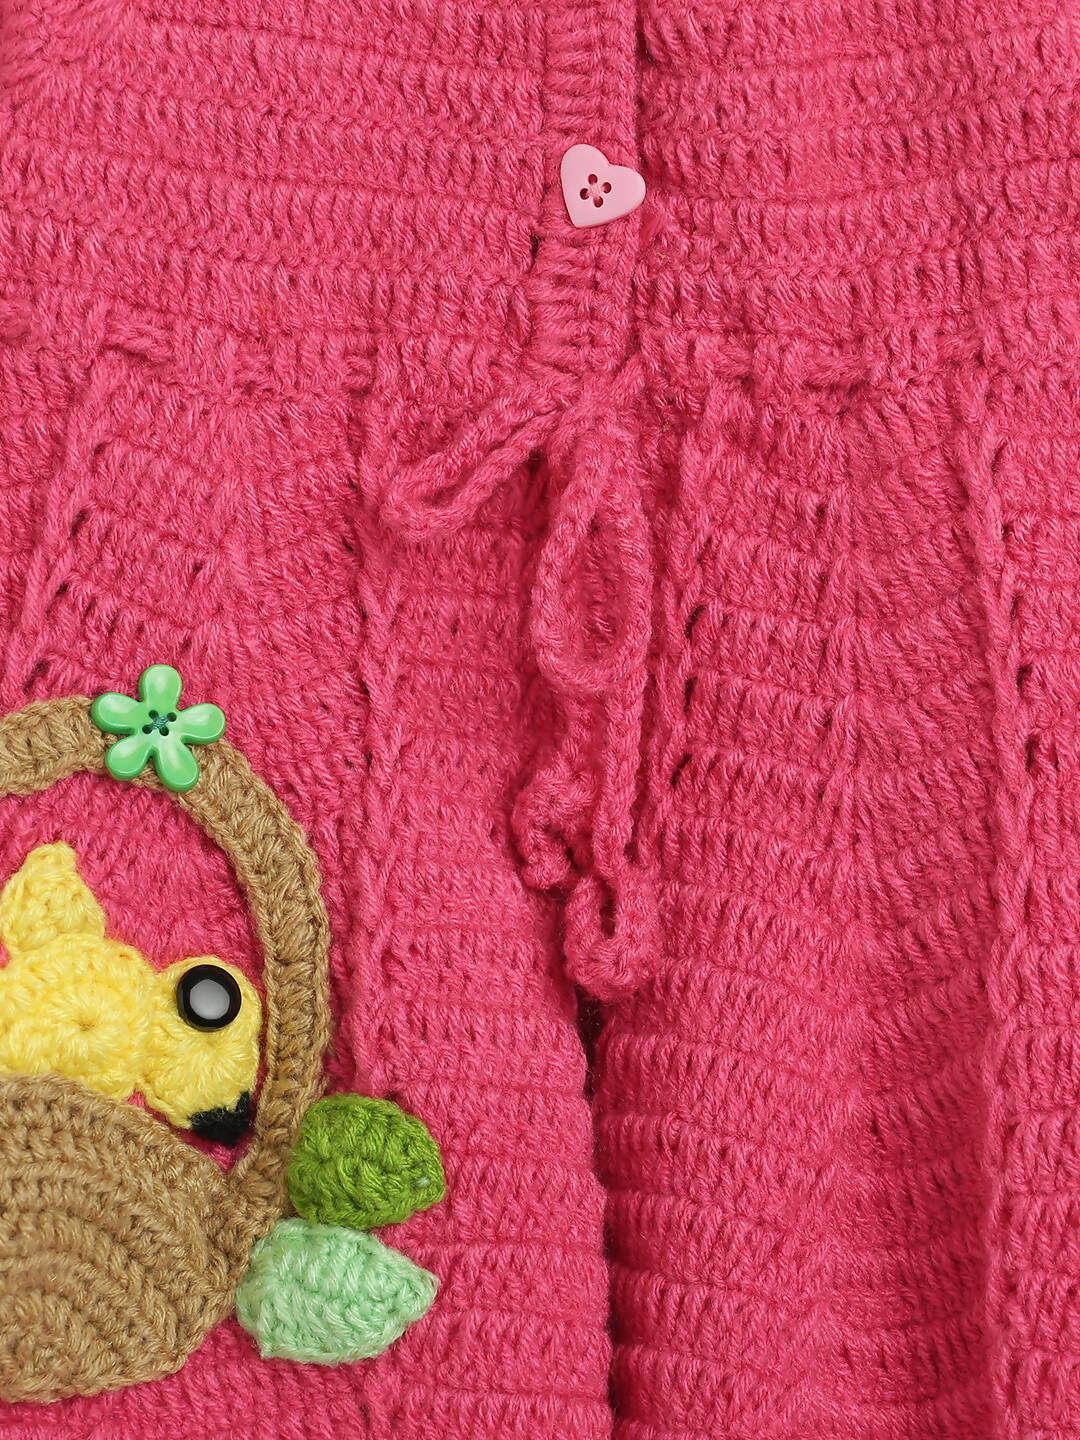 ChutPut Hand knitted Crochet Floral Basket Wool Dress - Pink - Distacart